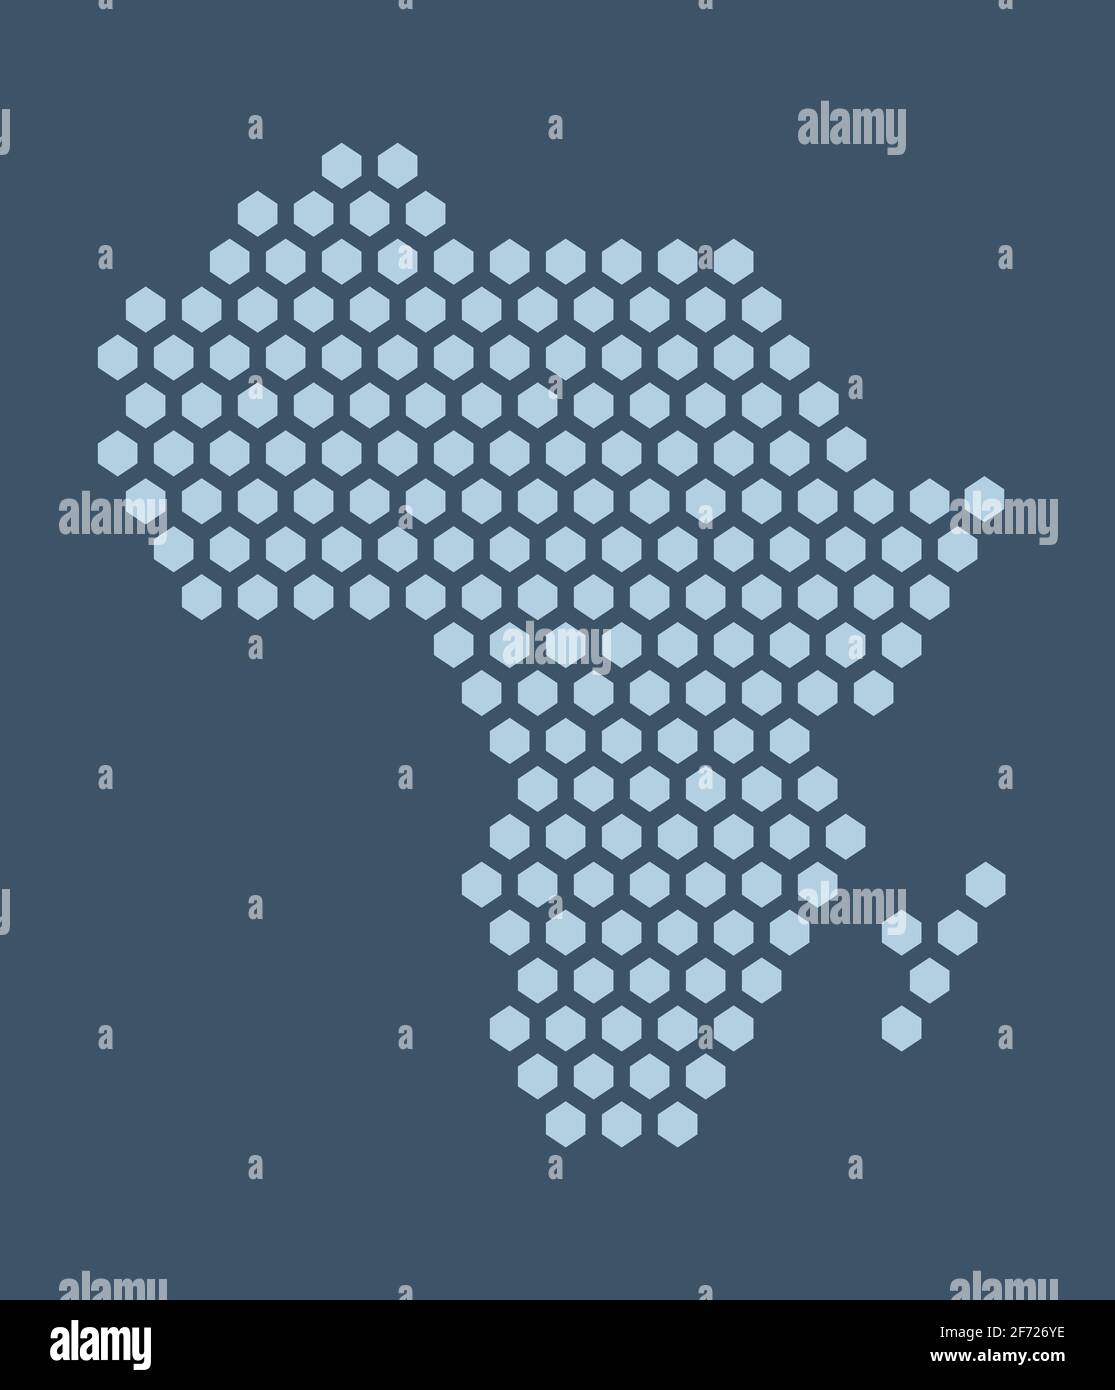 Dunkelblaue sechseckige Pixelkarte von Afrika. Vektor-Illustration Afrikanischer Kontinent Sechskantkarte gepunktetes Mosaik. Verwaltungsgrenze, Landzusammensetzung. Stock Vektor